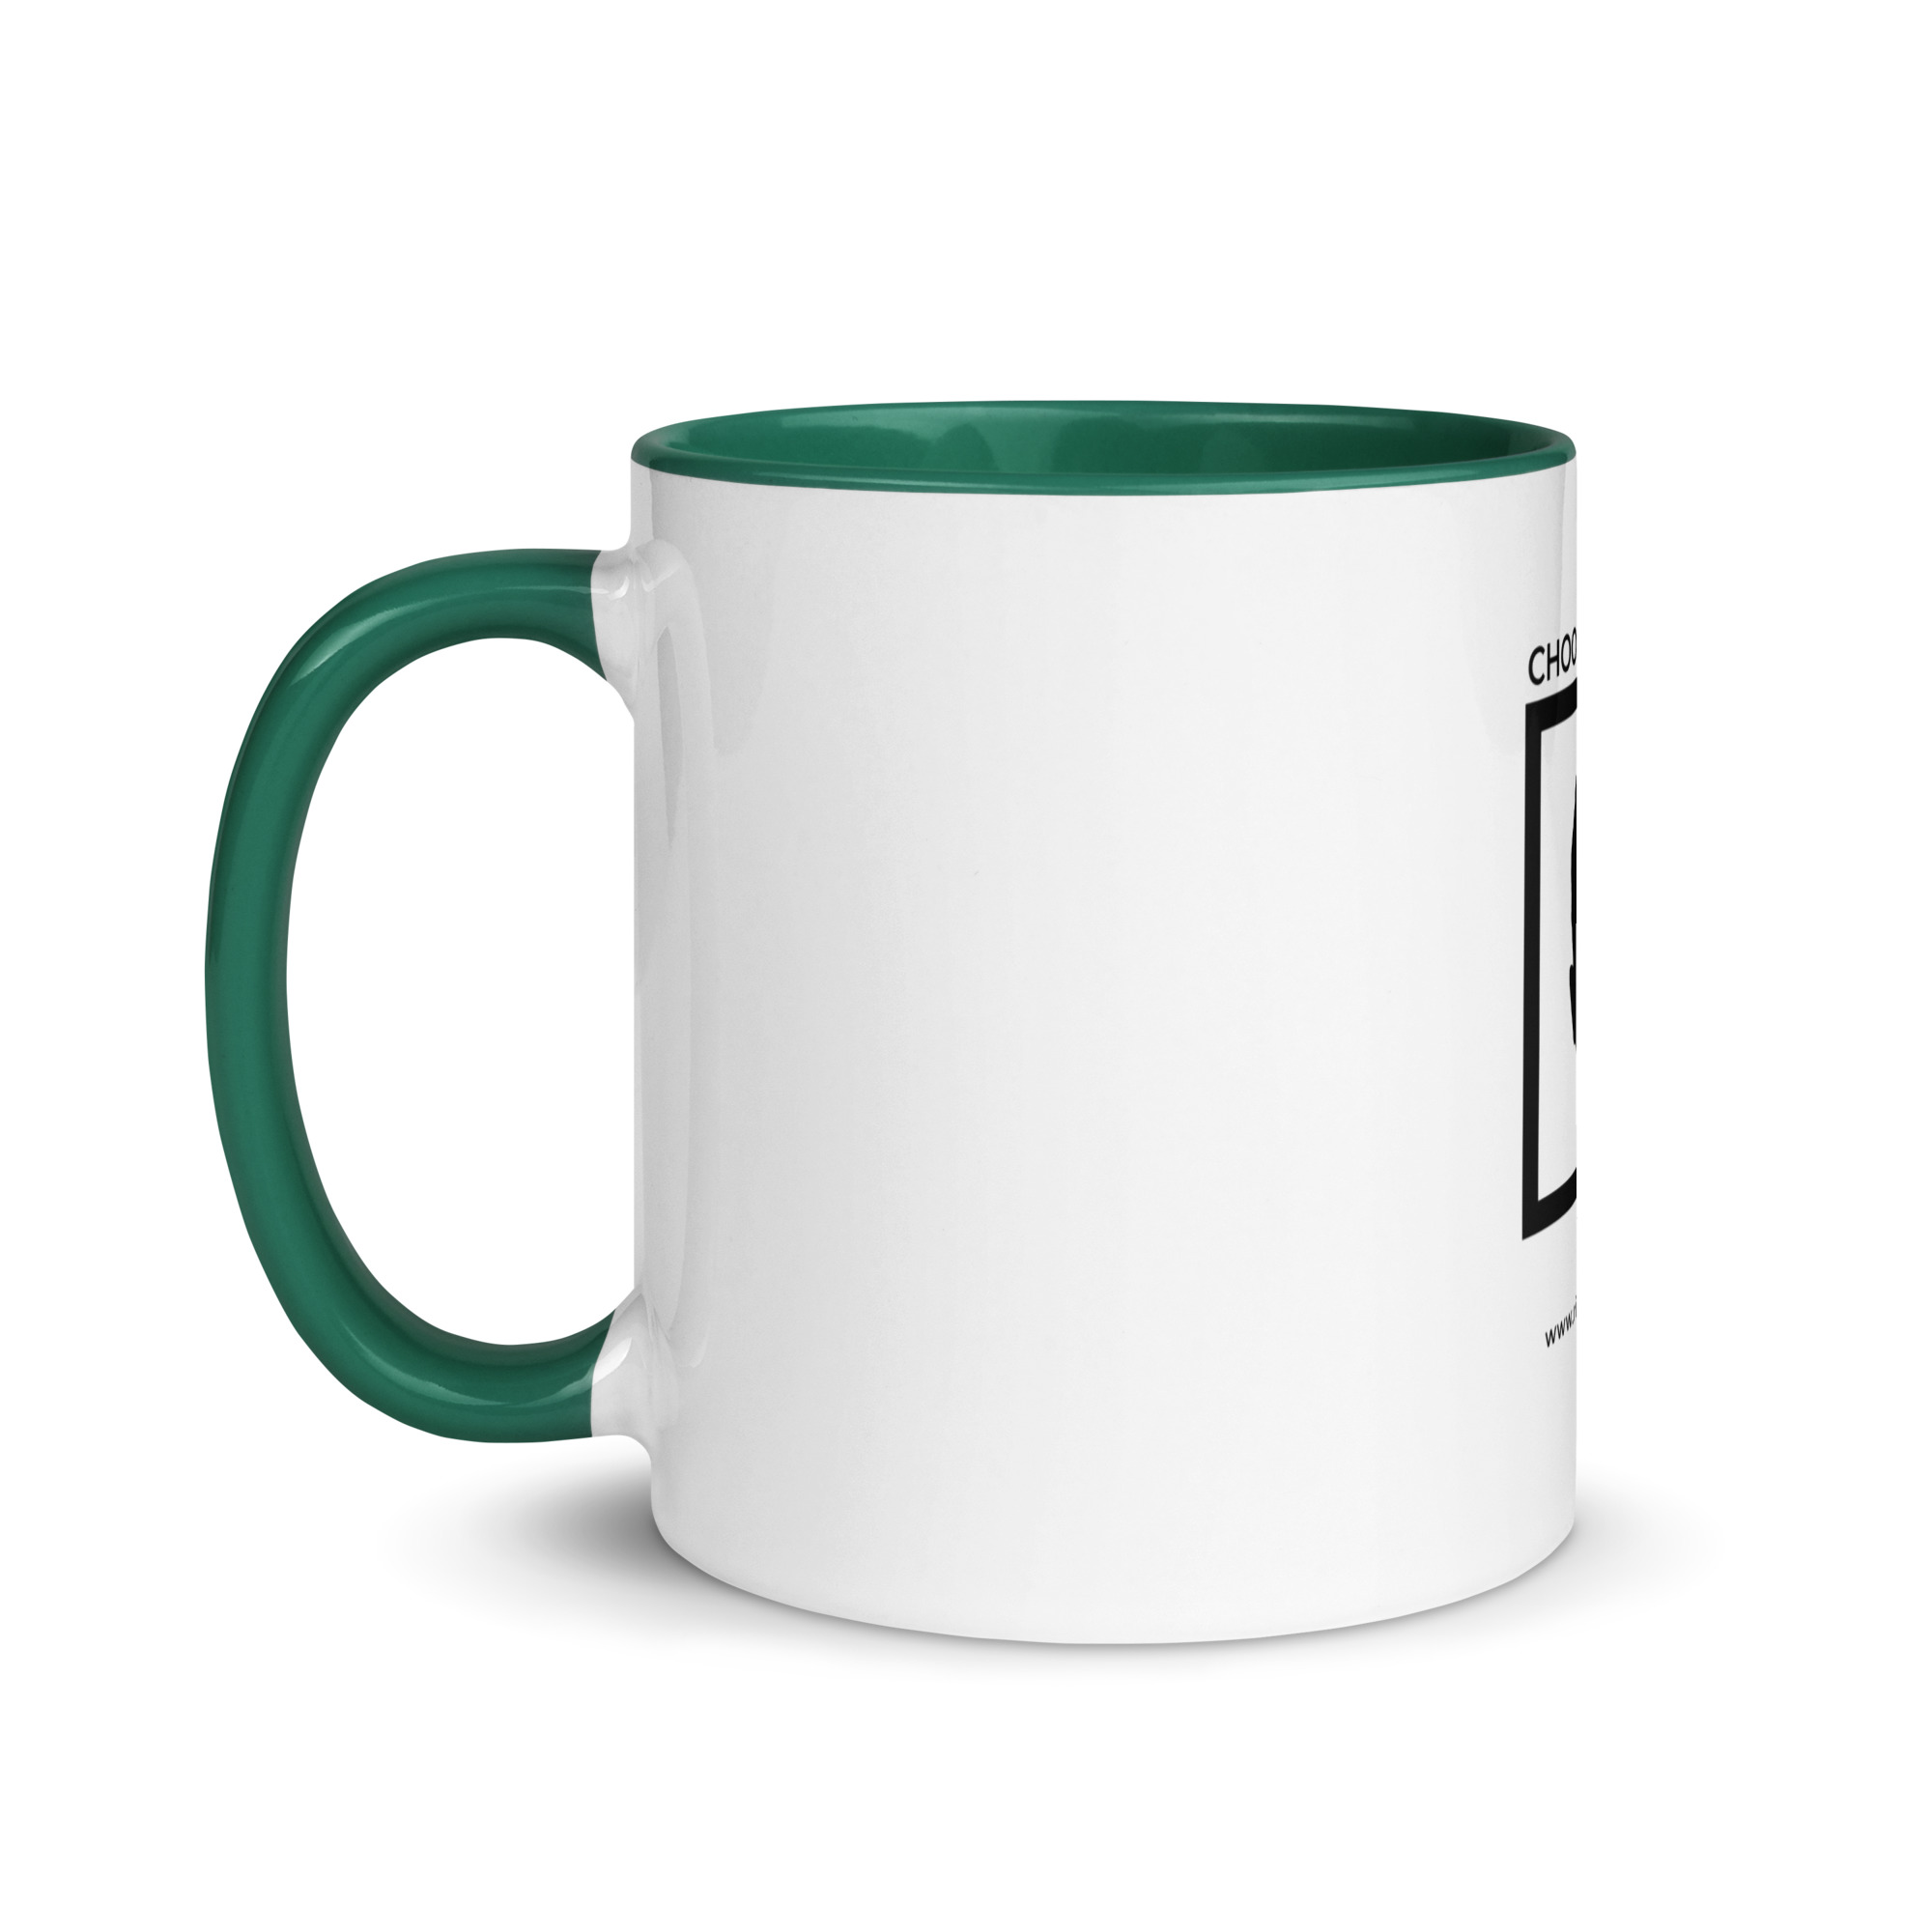 white-ceramic-mug-with-color-inside-dark-green-11-oz-left-6522a1a403e27.jpg